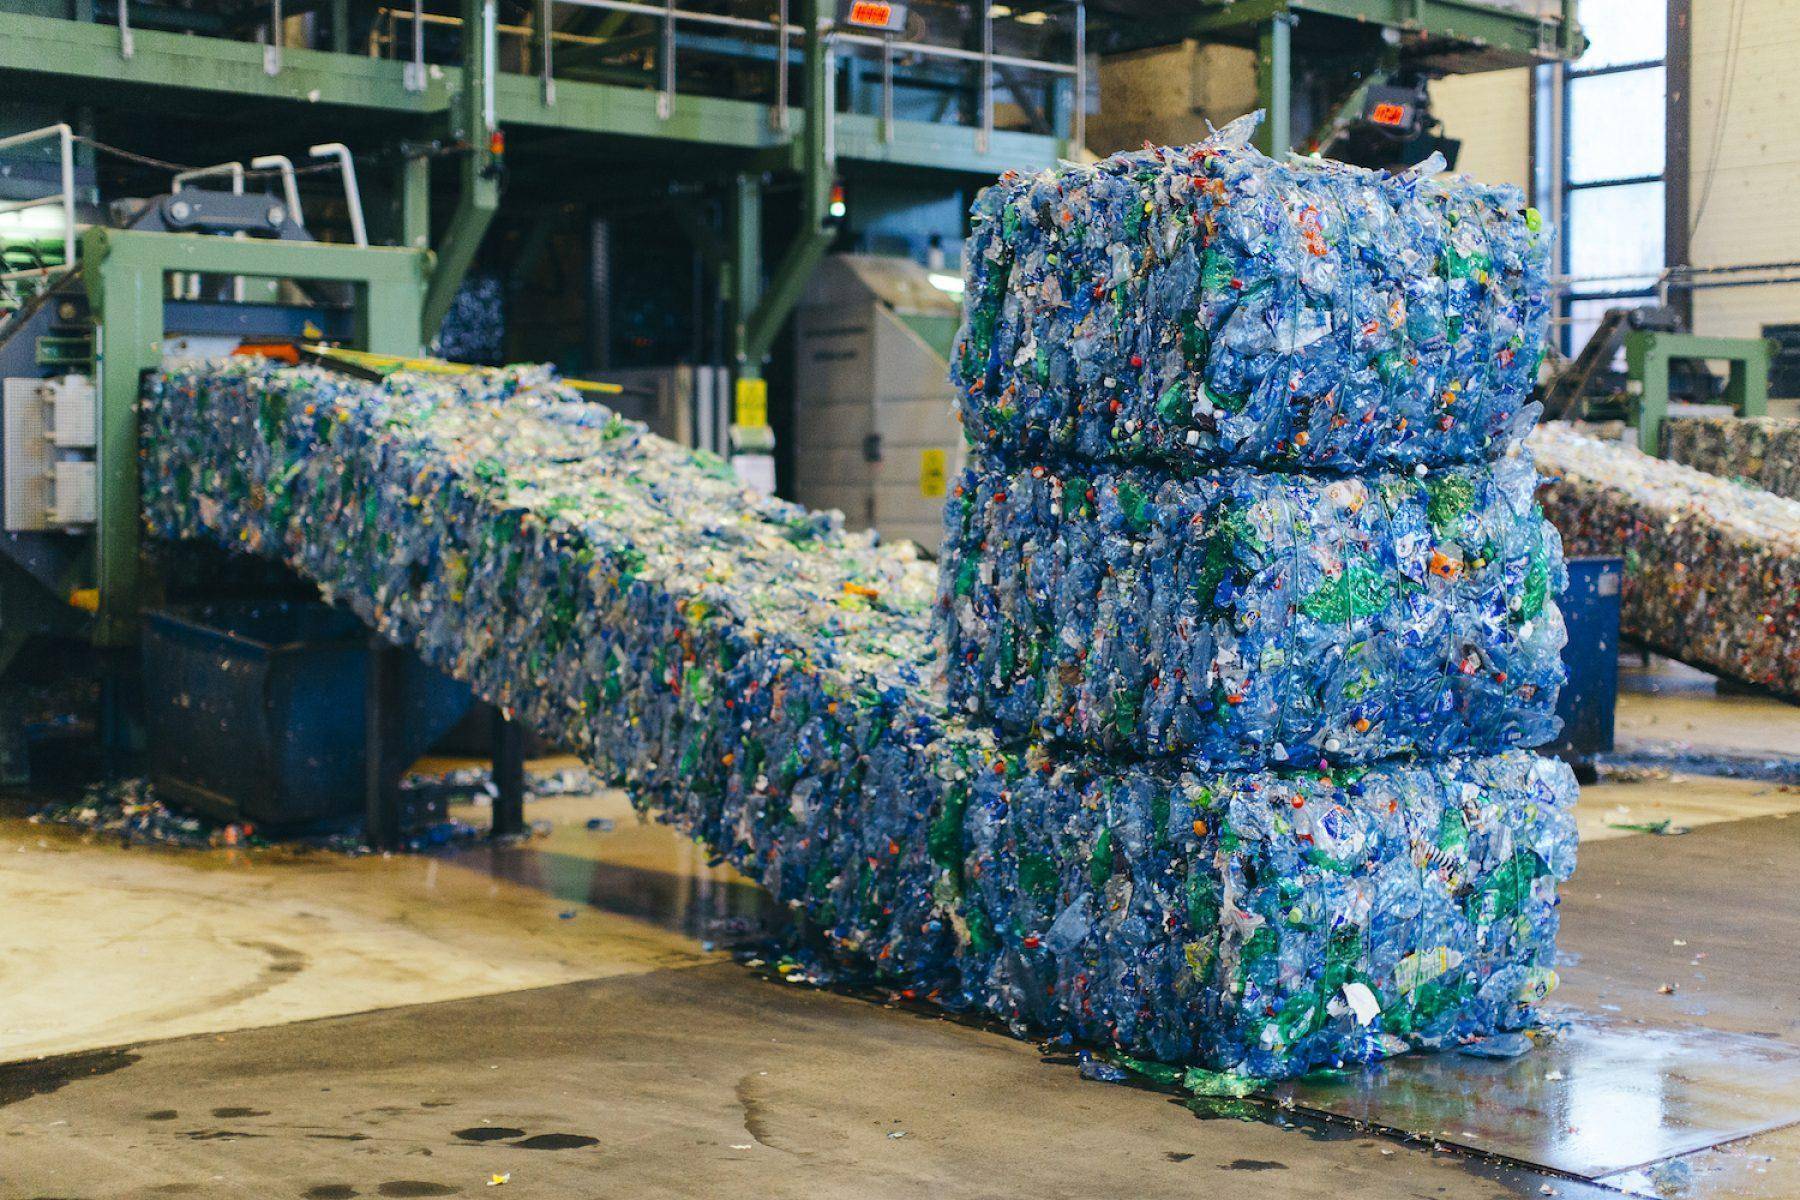 Переработка пластика как бизнес в россии: с чего начать, и поиск сырья, подлежащего утилизации, расчеты и финансовый план производства гранул, примеры заводов